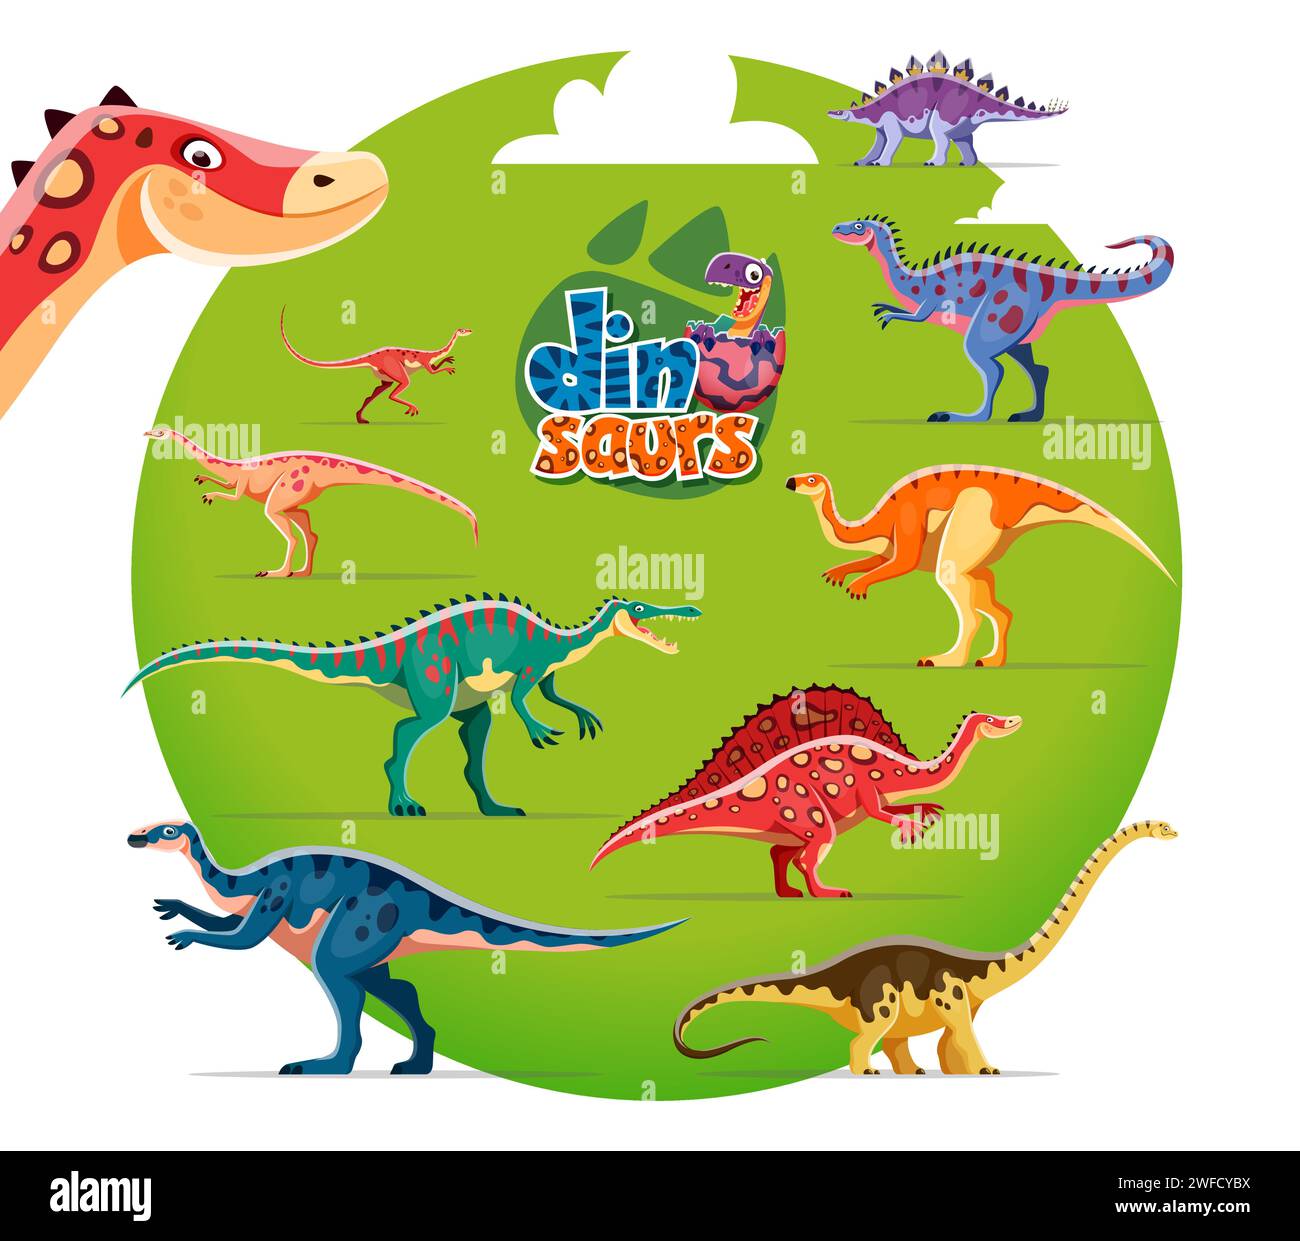 Niedliche Dinosaurier-Cartoon-Persönlichkeiten. Dravidosaurus, Alectrosaurus, Alvarezsaurus und Archaeornithomimus, Suchomimus, Probactrosaurus, Ouranosaurus und Aralosaurus, Hypselosaurus-Dinosaurier-Charaktere Stock Vektor